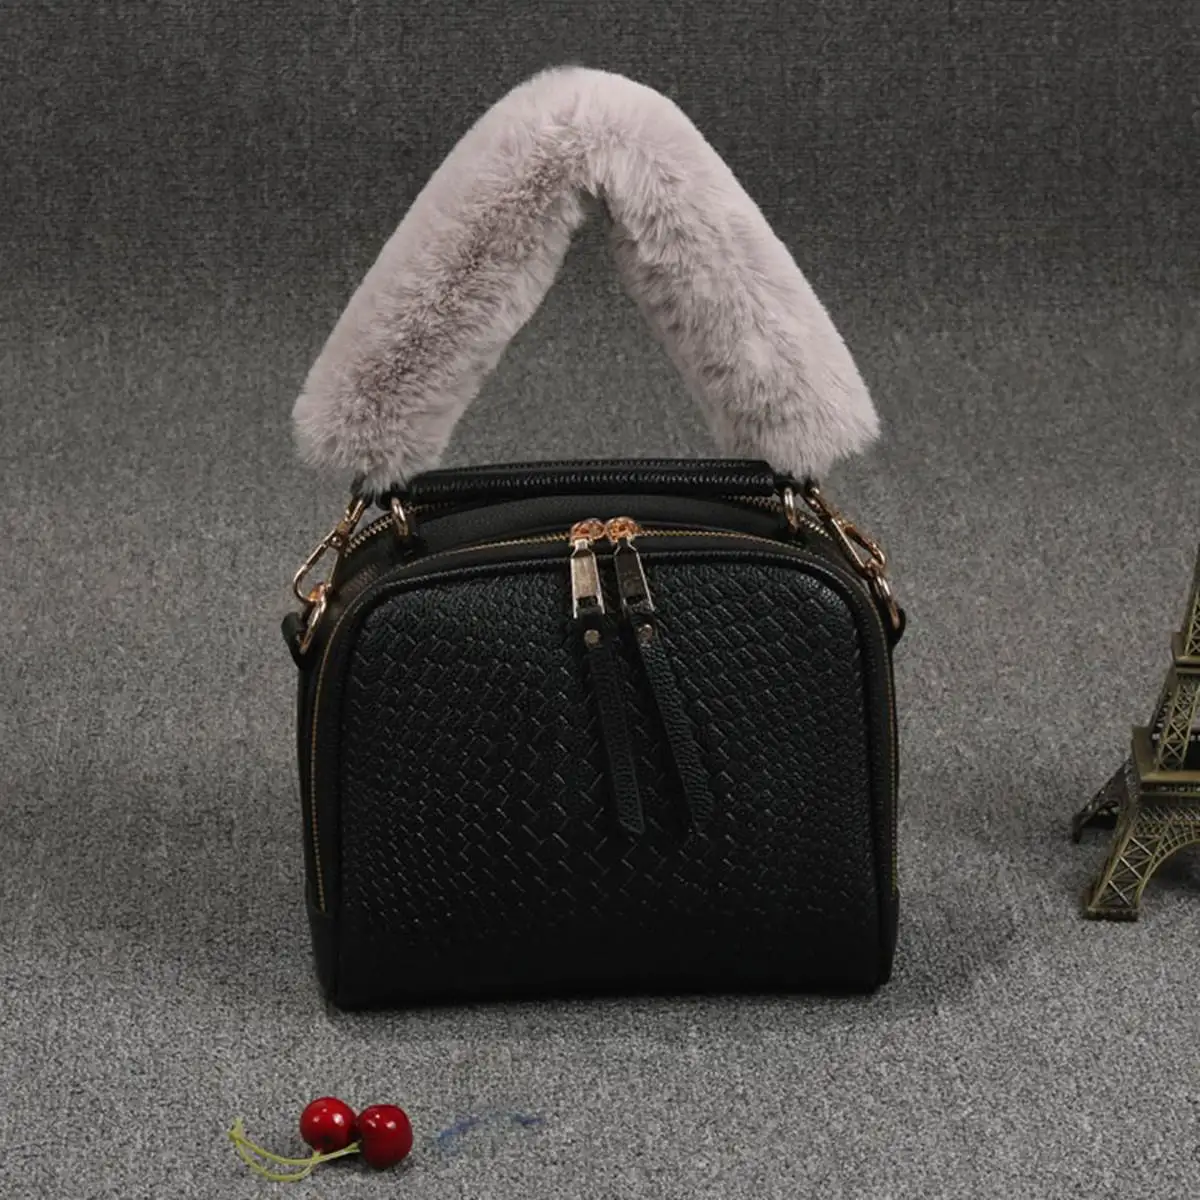 Aequeen 120/100/40 см DIY Замена сумка ремень для сумки женская сумка из меха ремни ручка для кошелек Ремни сумок, аксессуары для сумок из золотистой пряжкой - Цвет: Light gray 40cm